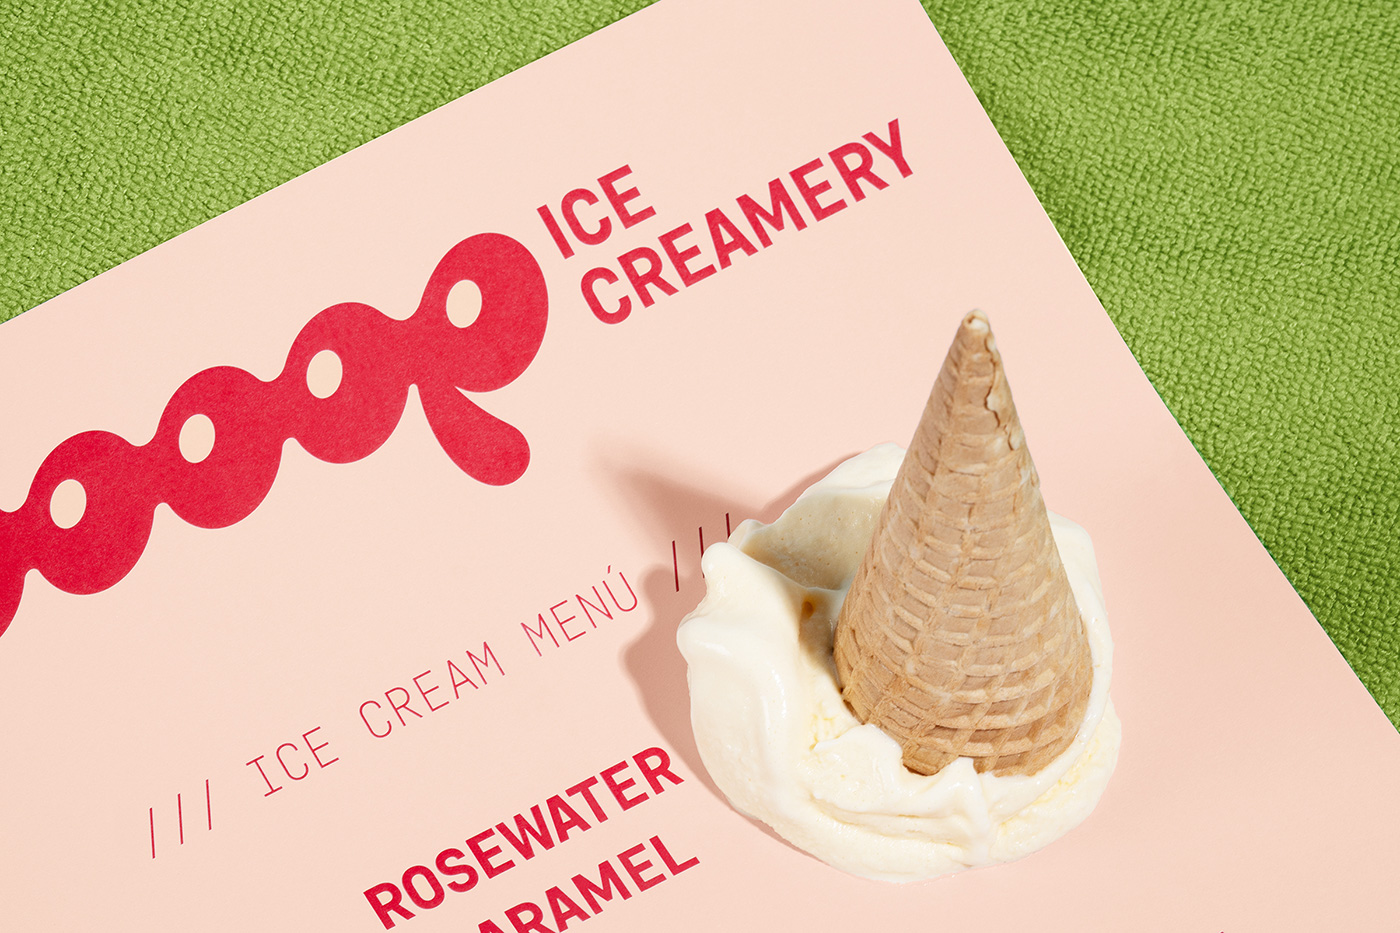 OOP冰淇淋店品牌形象设计